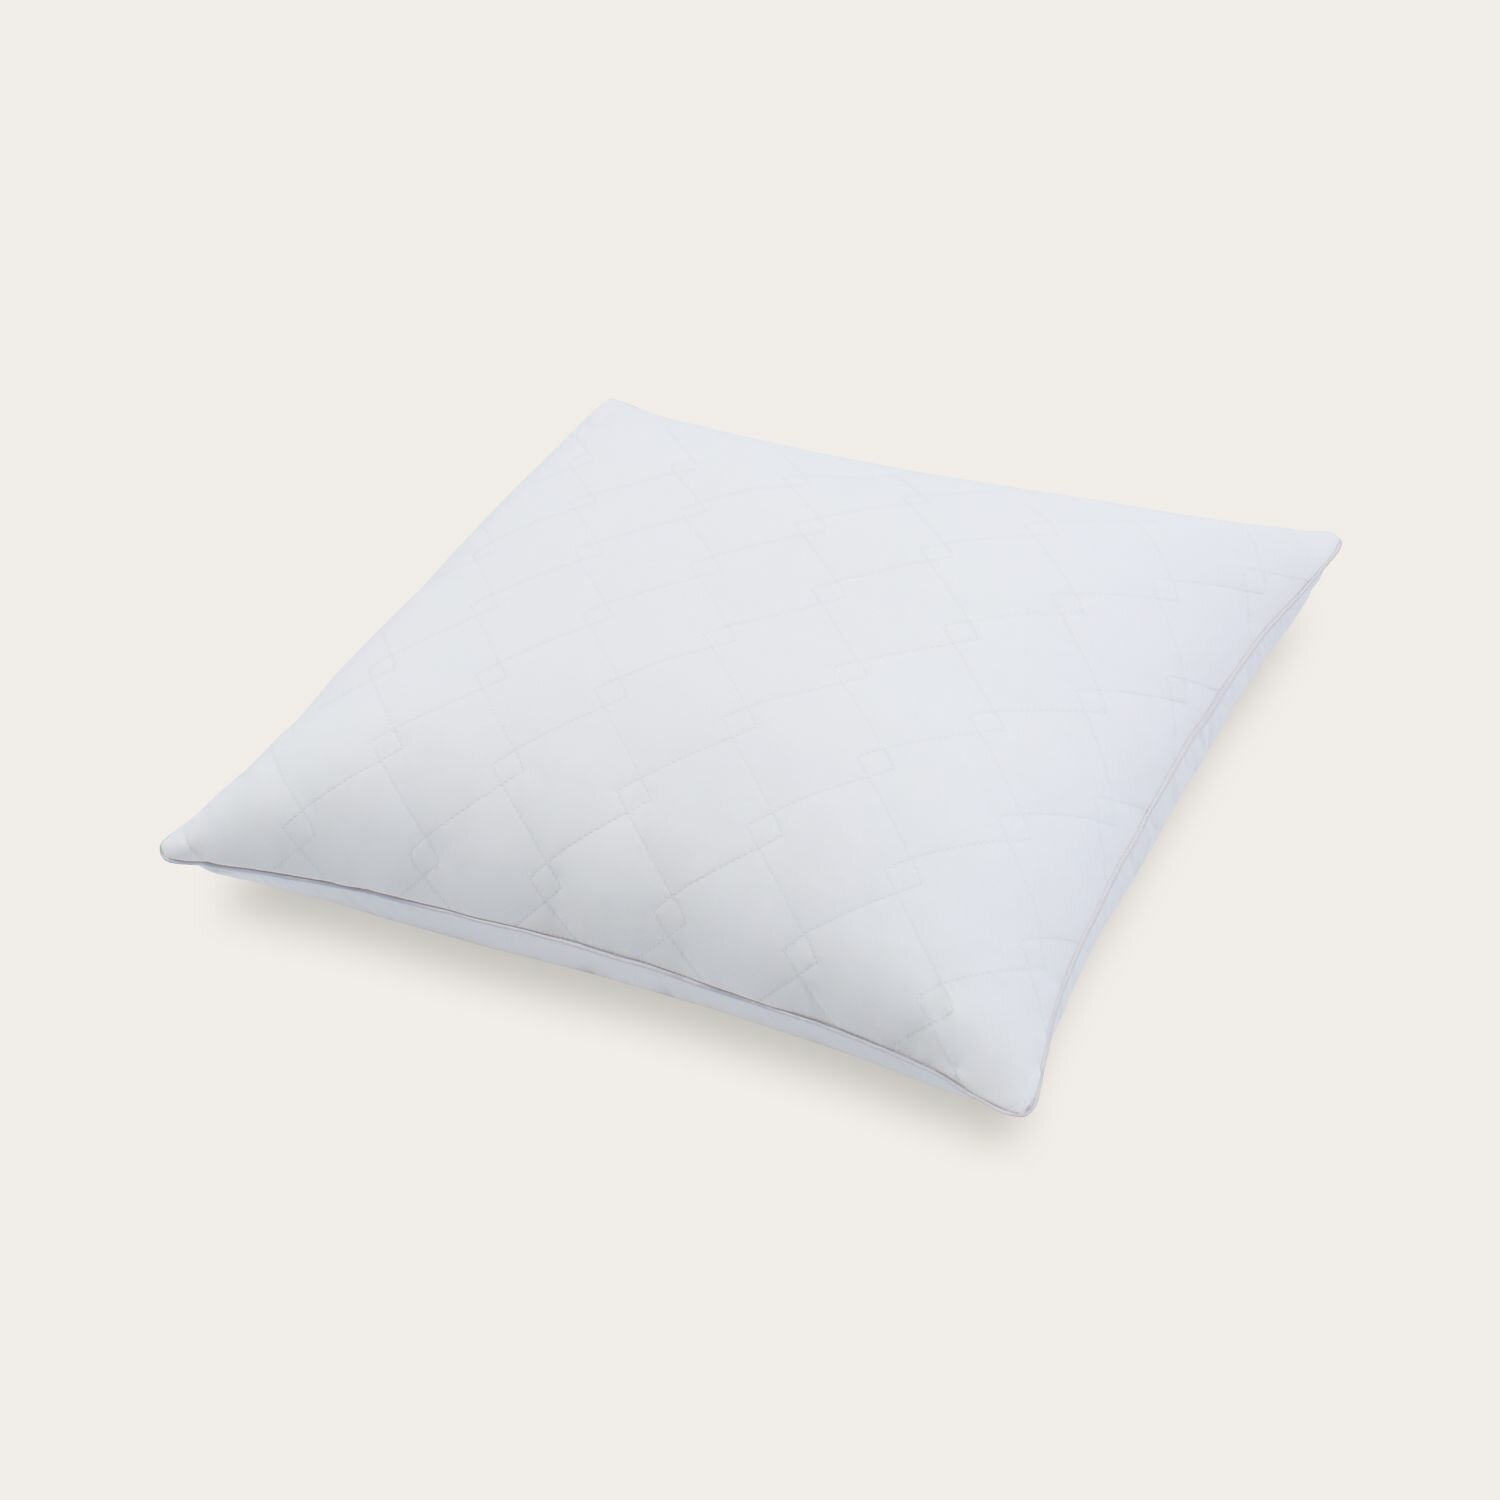 Комплект из двух подушек для сна SONNO URBAN 70x70 см , гипоаллергенный наполнитель Amicor TM, Ослепительно белый